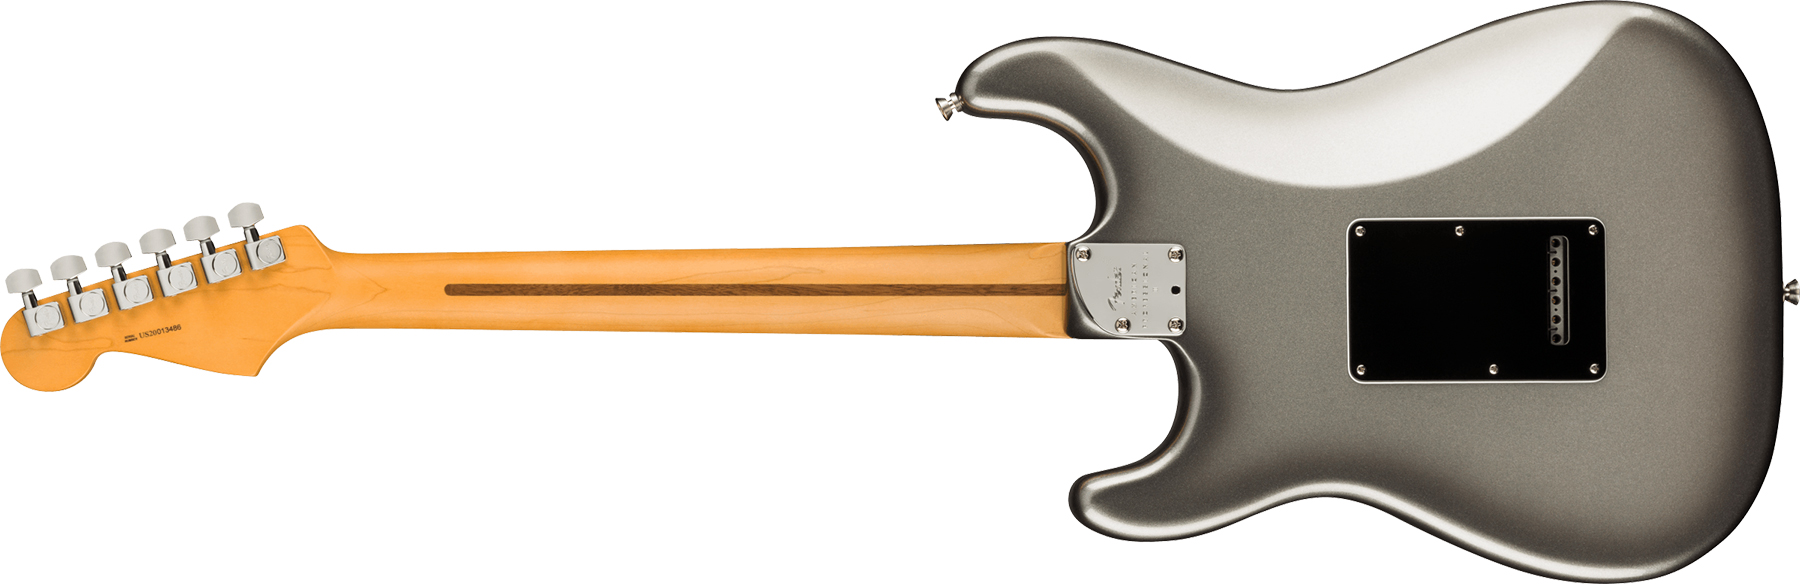 Fender Strat American Professional Ii Usa Rw - Mercury - Guitarra eléctrica con forma de str. - Variation 1